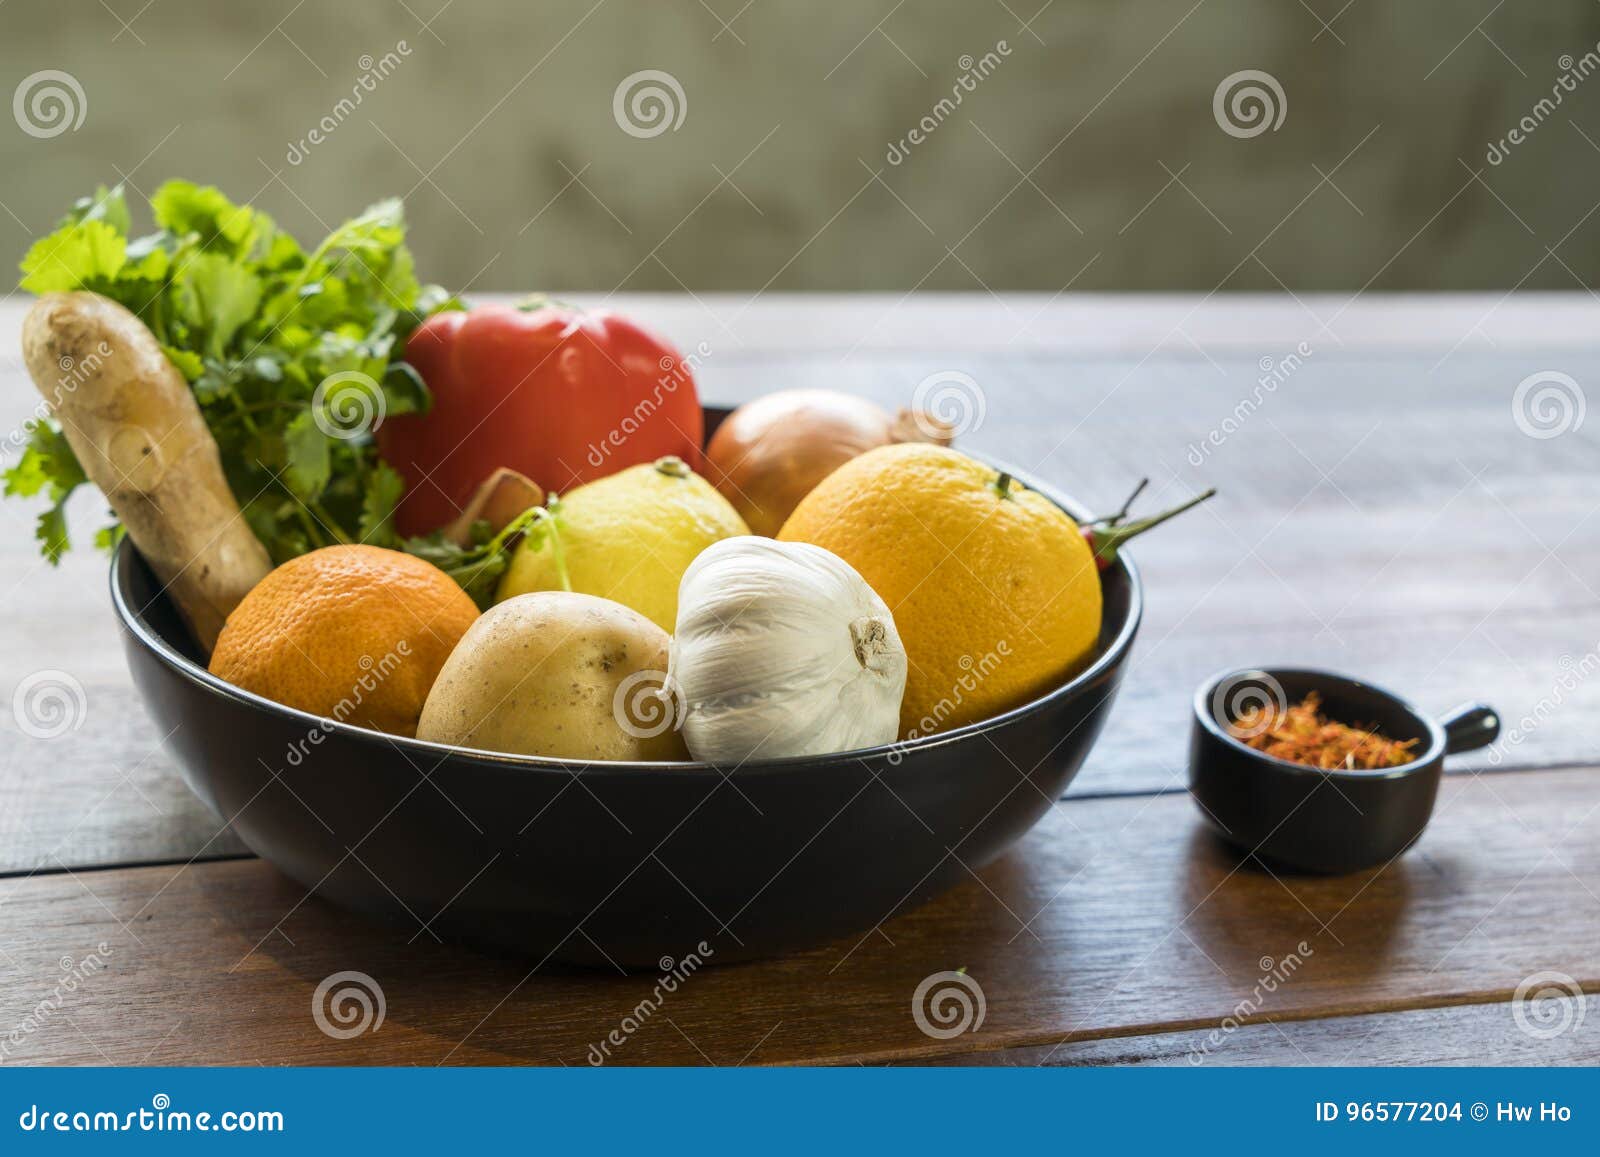 Légumes frais dans un plateau, courgettes, oignon, orange, citron, à. Un plateau des légumes frais sur une table en bois, courgettes, oignon, orange, citron, tomate, pomme de terre